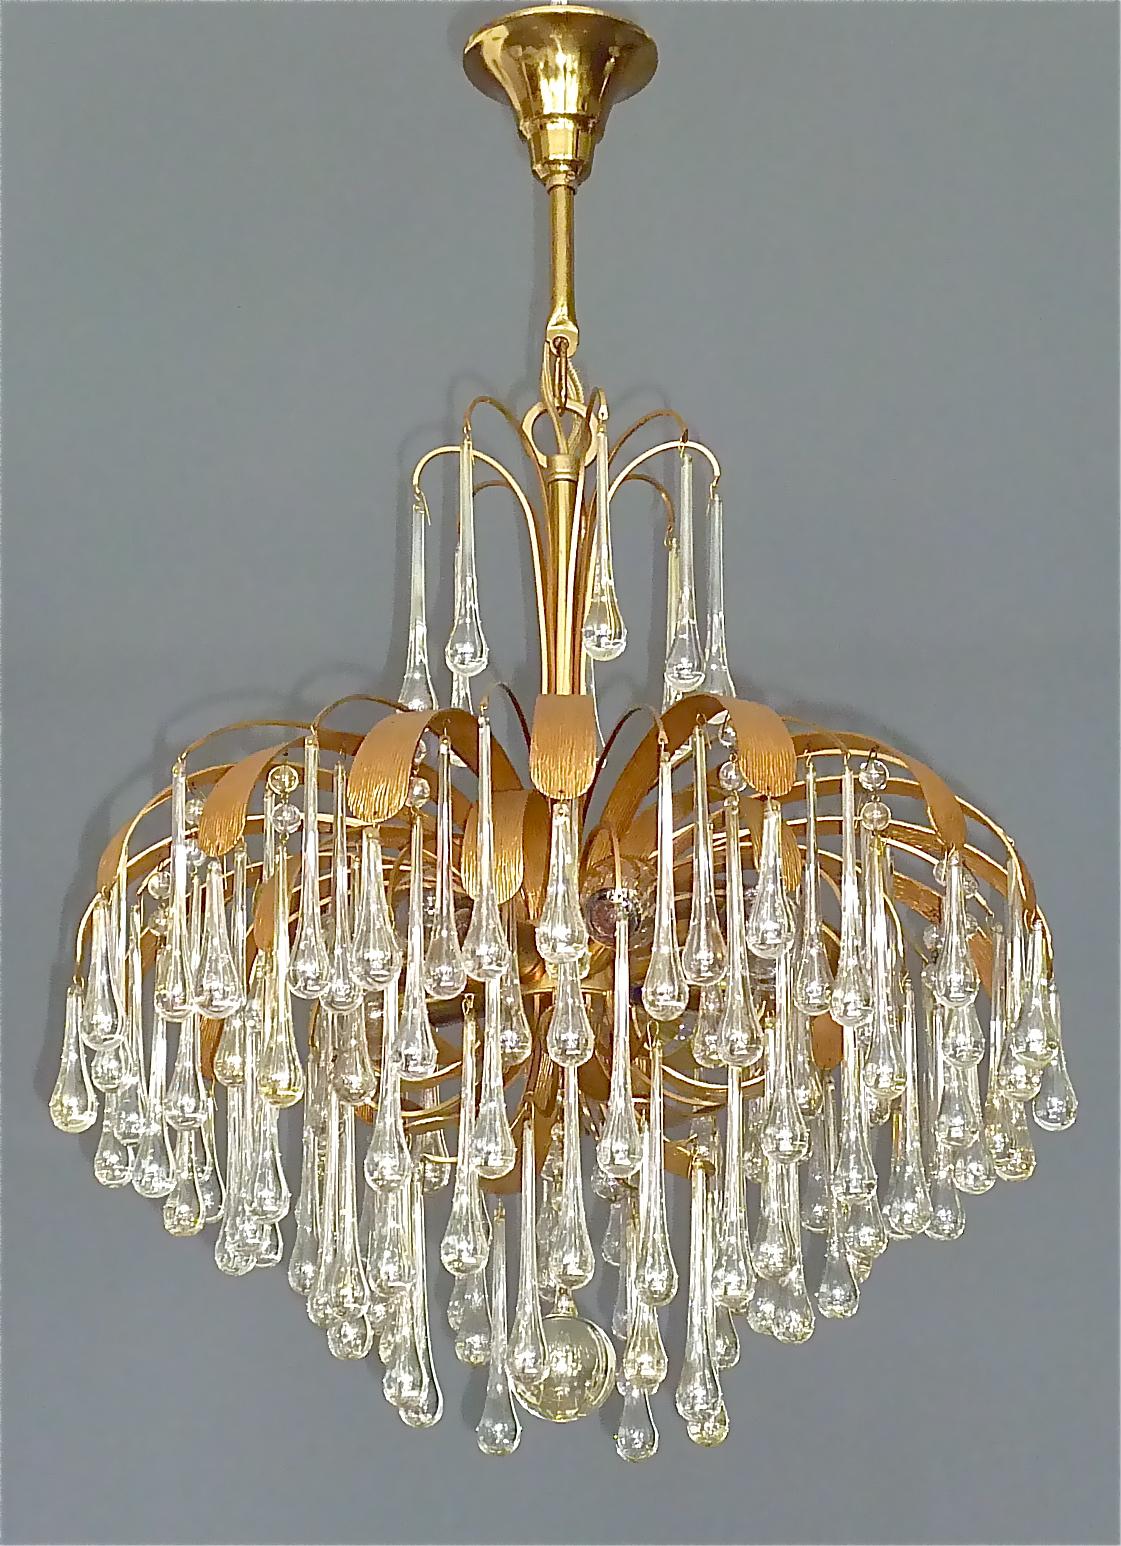 Grand lustre spoutnik en laiton doré signé, avec gouttes et perles allongées en verre de Murano légèrement teinté, fabriqué par Palwa, dans le style de Venini, Allemagne, vers les années 1960-1970. Cette magnifique lampe suspendue est composée d'un